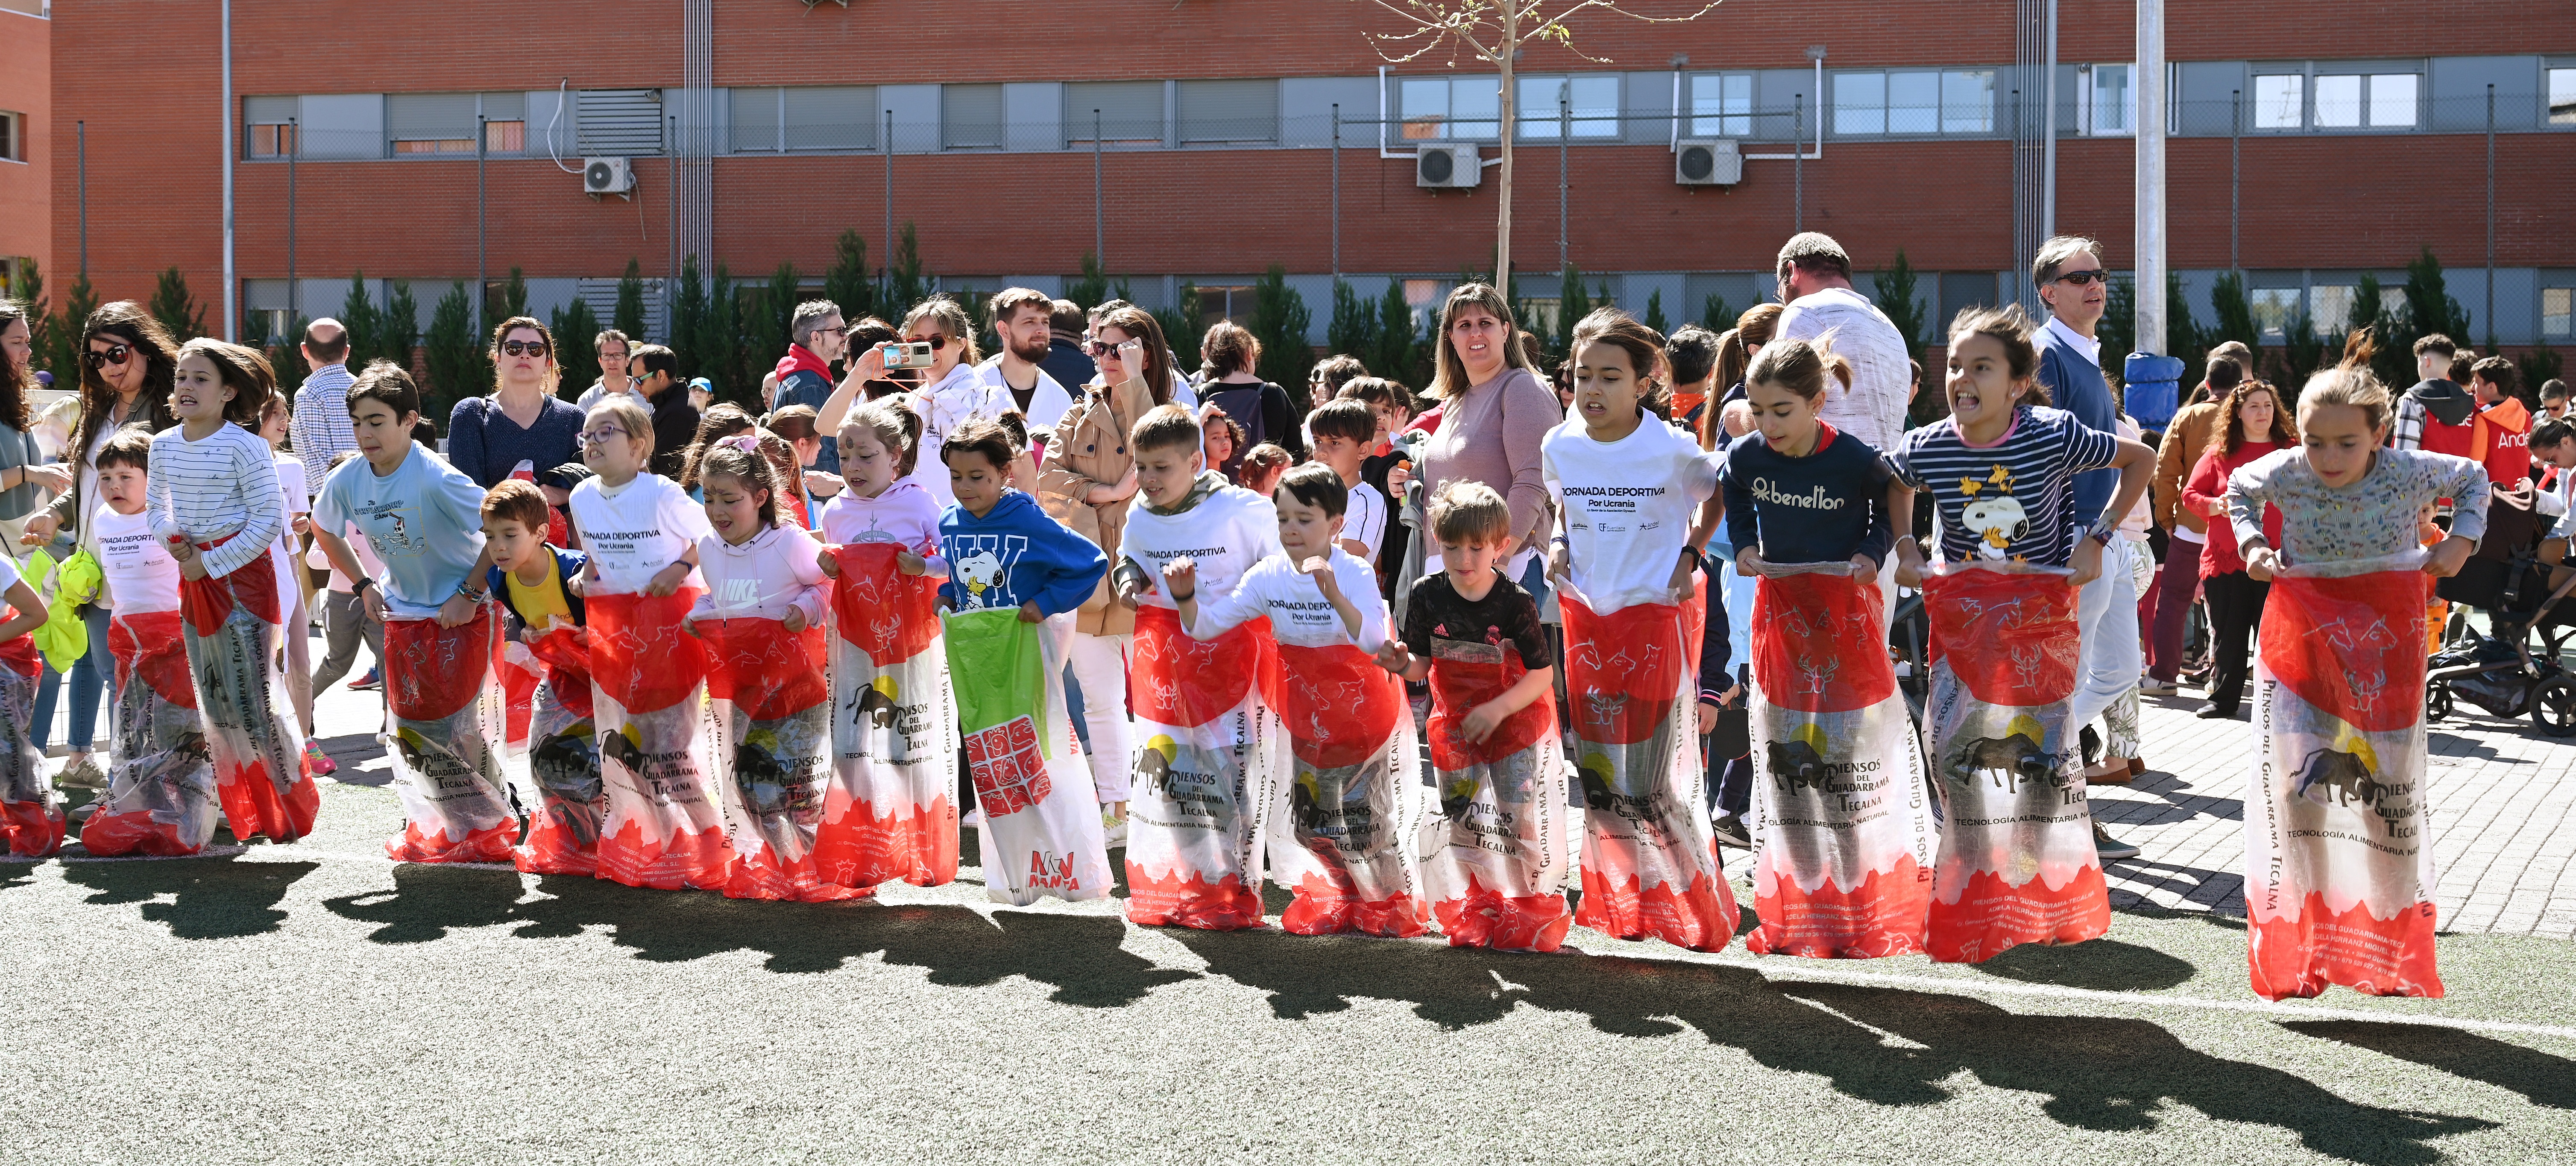 Jornada Deportiva Solidaria Nadiesolo | Colegios Andel y Fuenllana